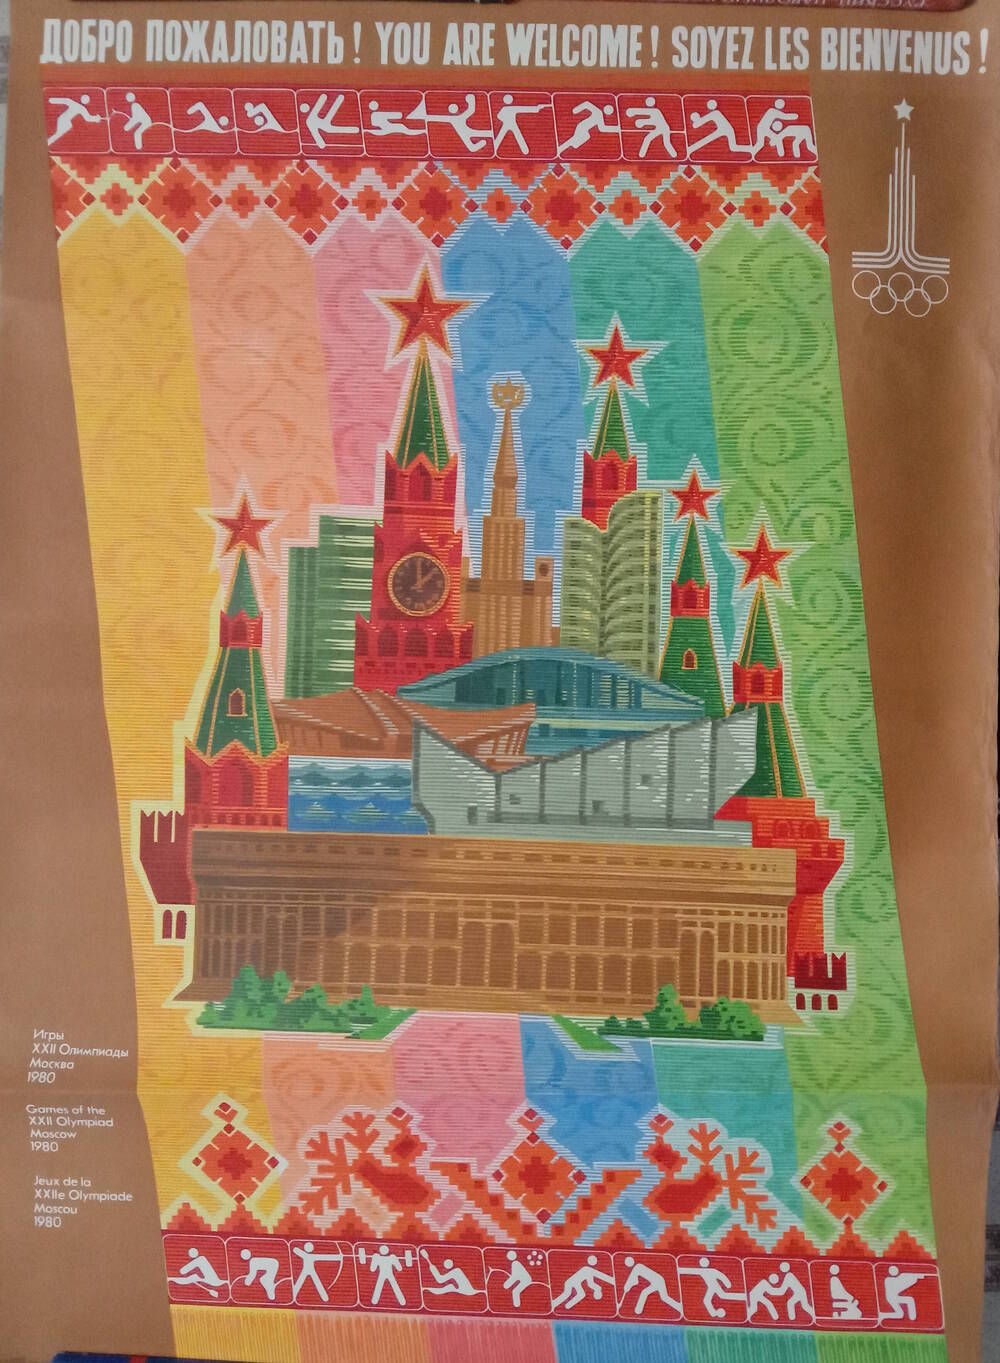 Плакат
«Добро пожаловать! Игры XXII Олимпиады. 
Москва 1980»